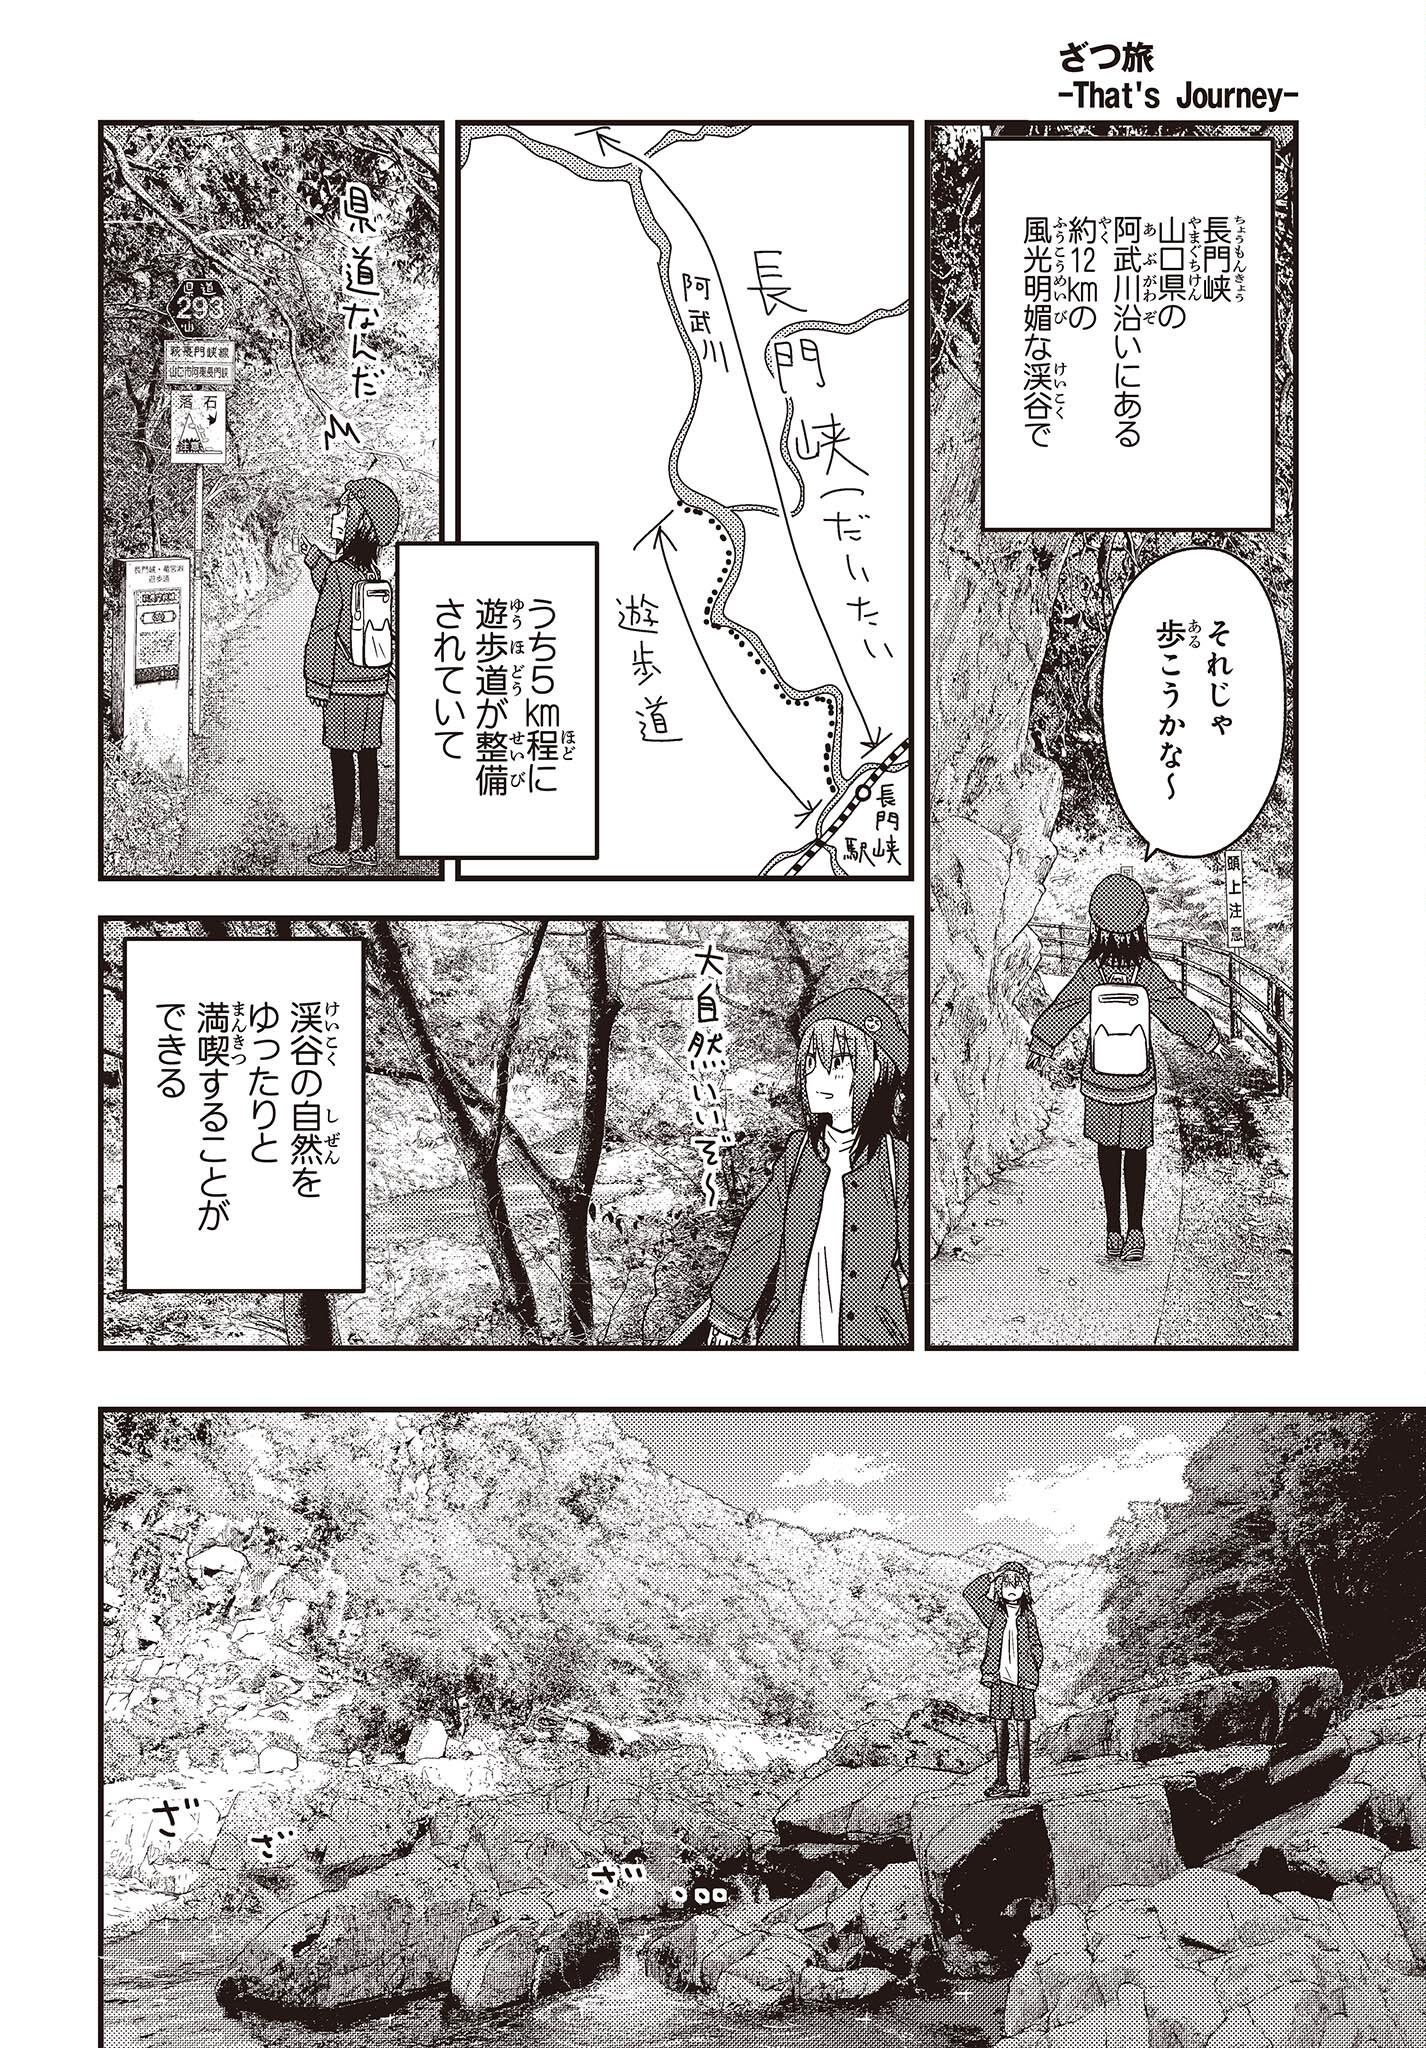 ざつ旅-That's Journey- 第29話 - Page 18